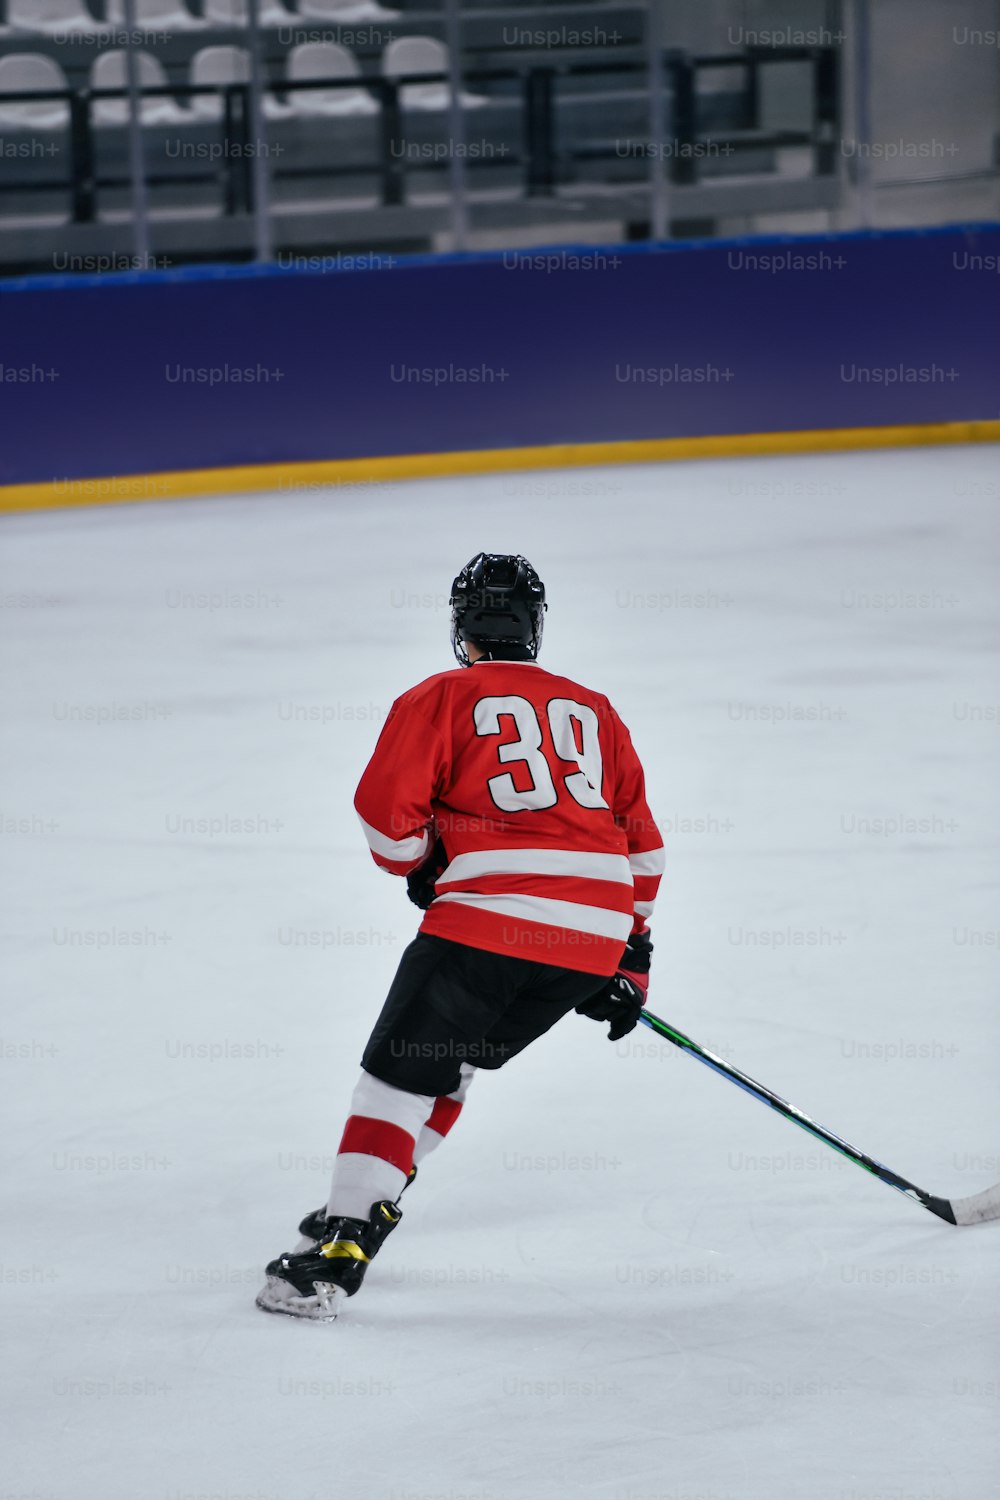 Un jugador de hockey con una camiseta roja patinando en una pista de hielo